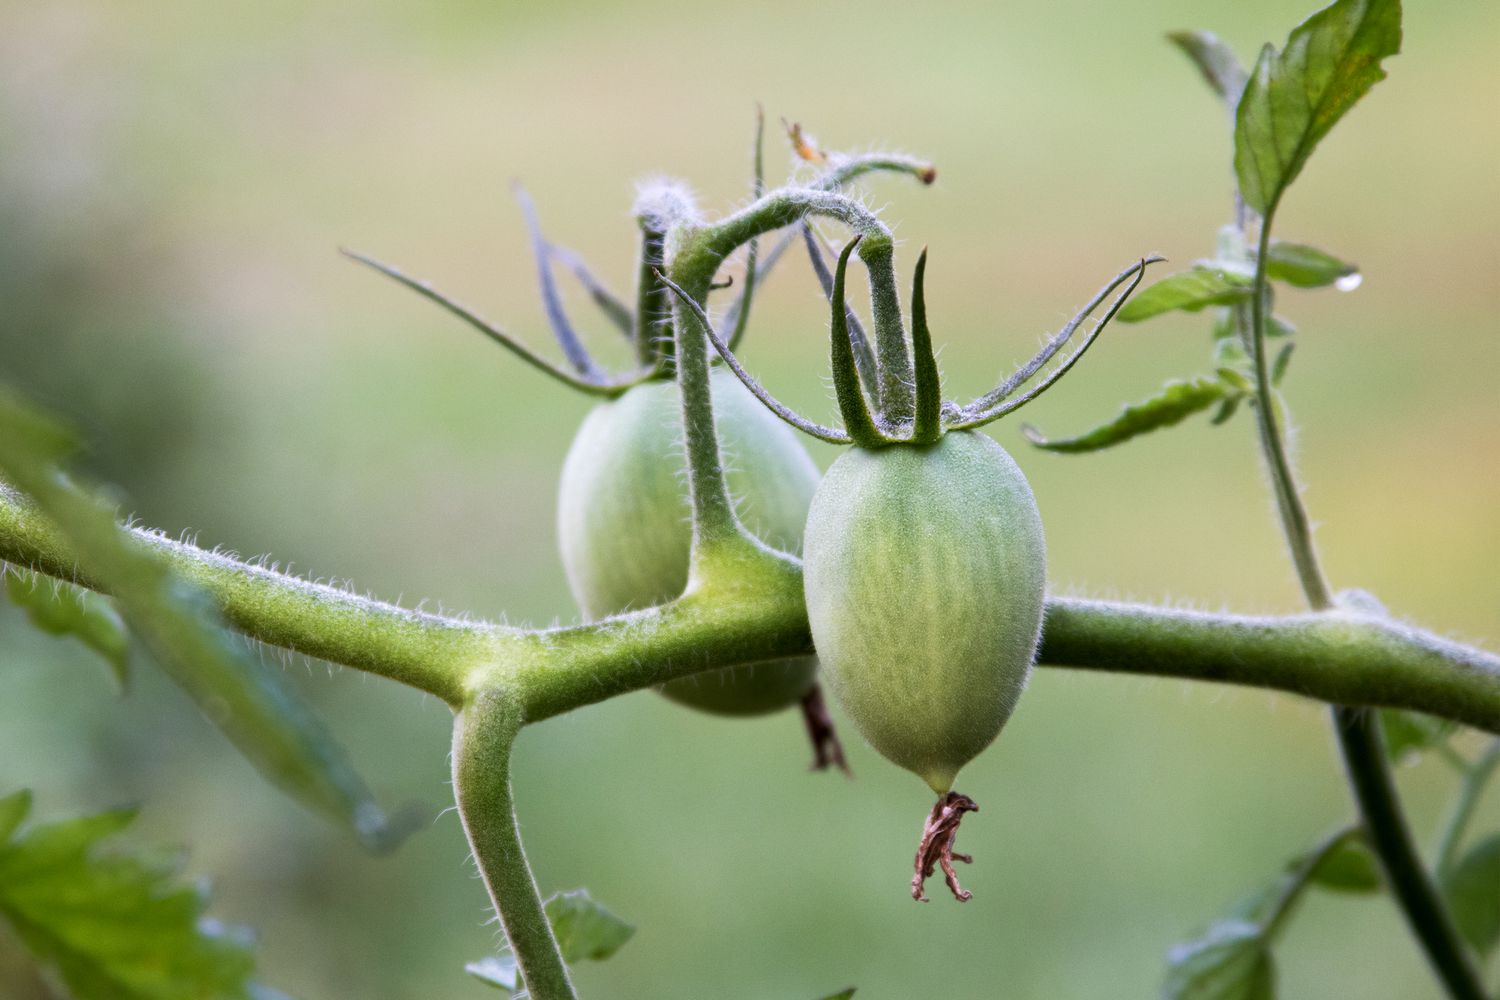 Kleine eiförmige grüne Roma-Tomaten hängen an einer Pflanzenranke